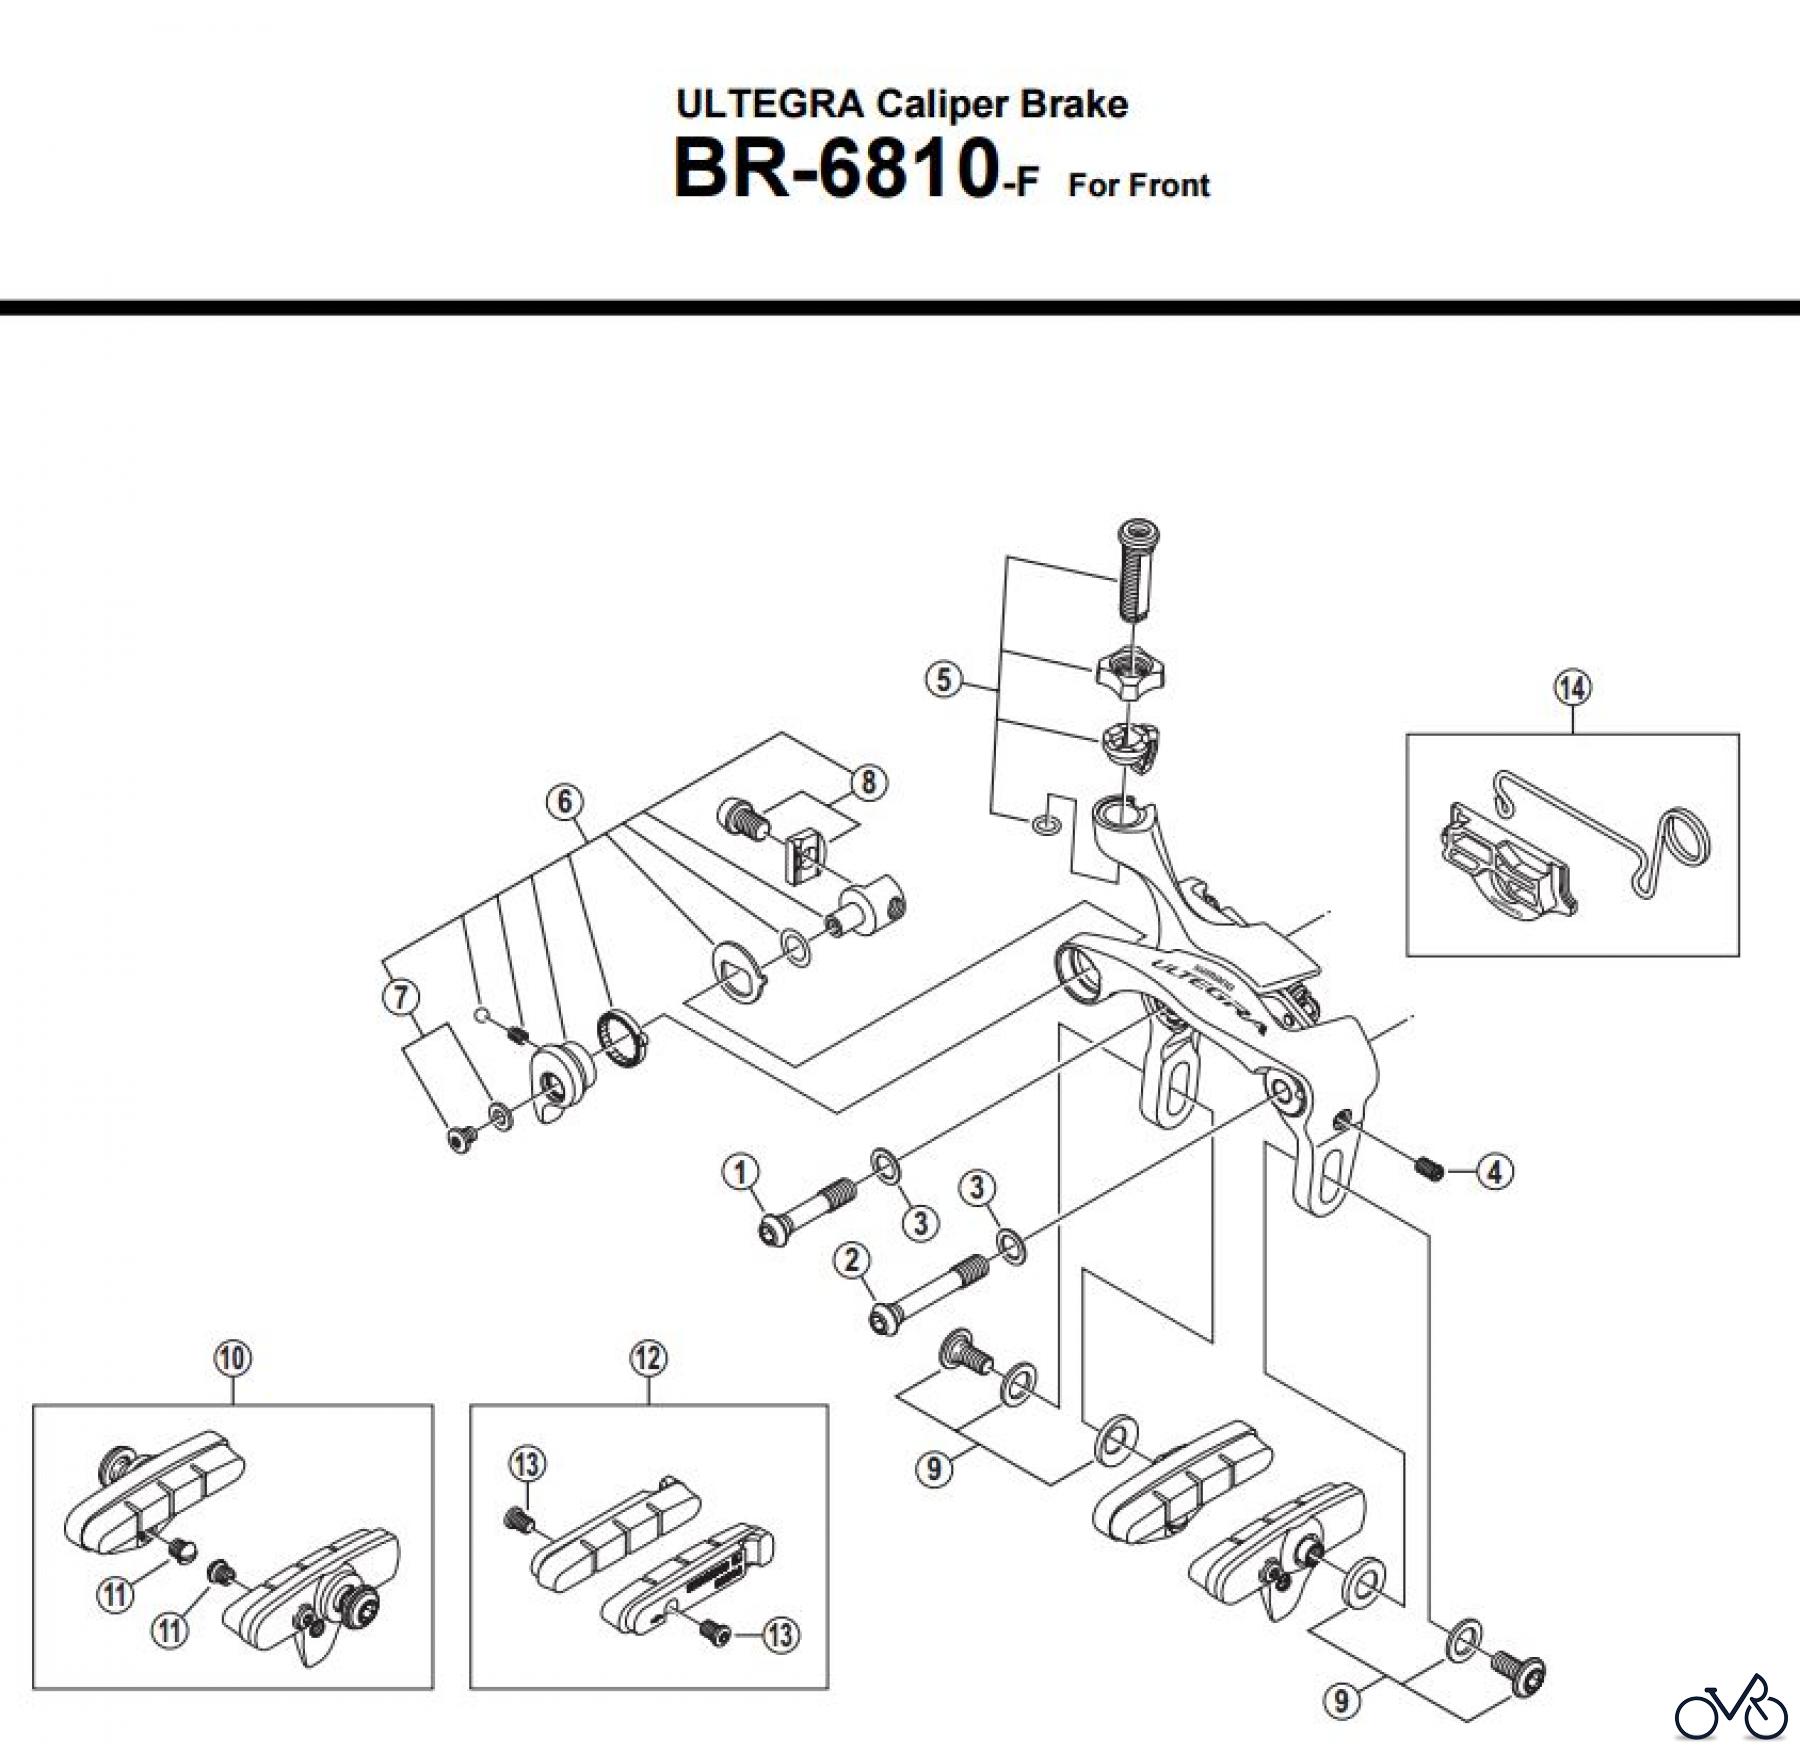  Shimano BR Brake - Bremse BR-6810-F -3600  ULTEGRA Caliper Brake